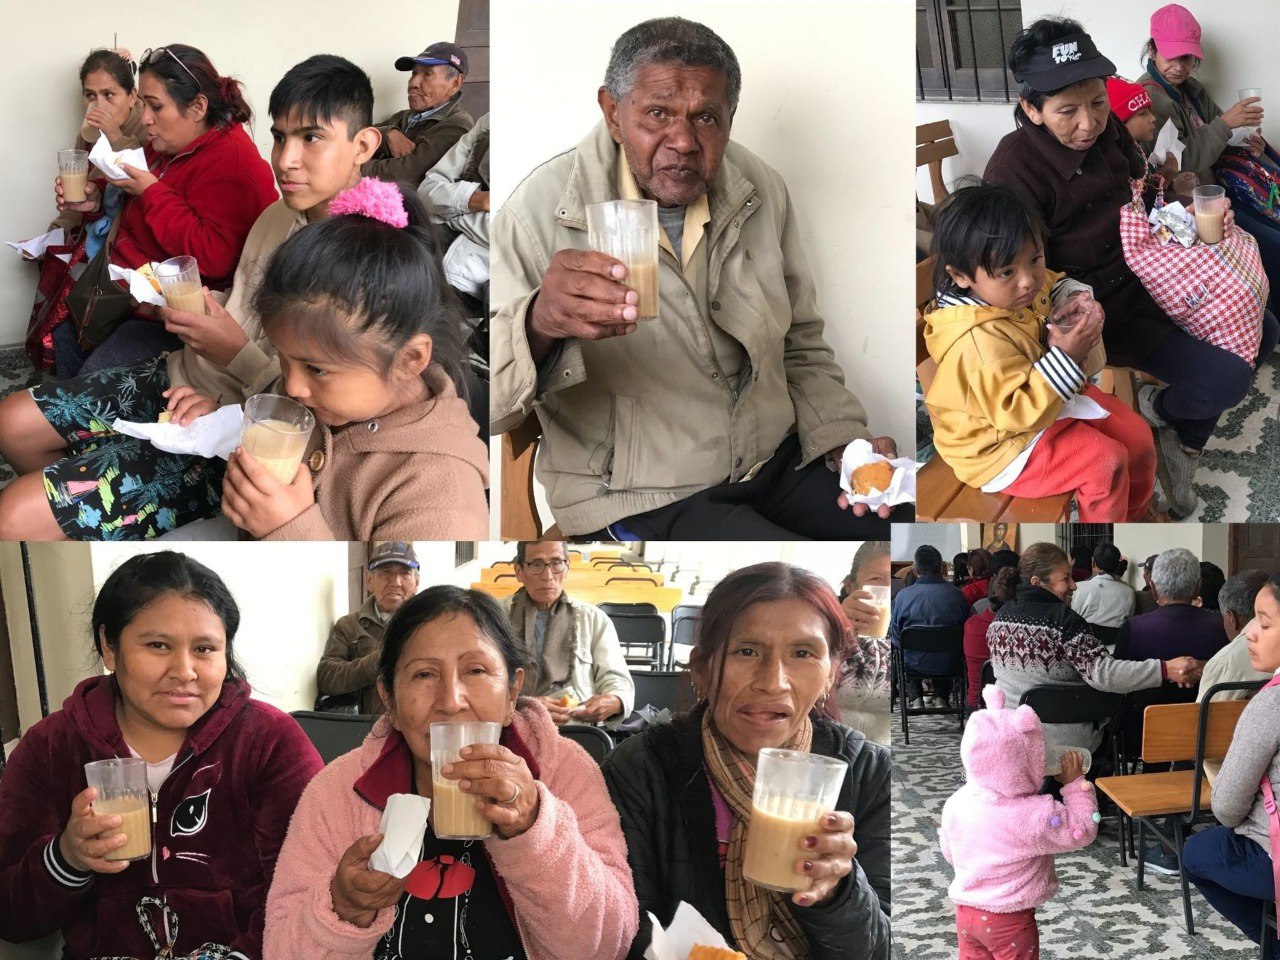  Participantes del encuentro de misericordia beben la quinua carretillera. (Foto: cortesía Hna. Marlene Quispe)